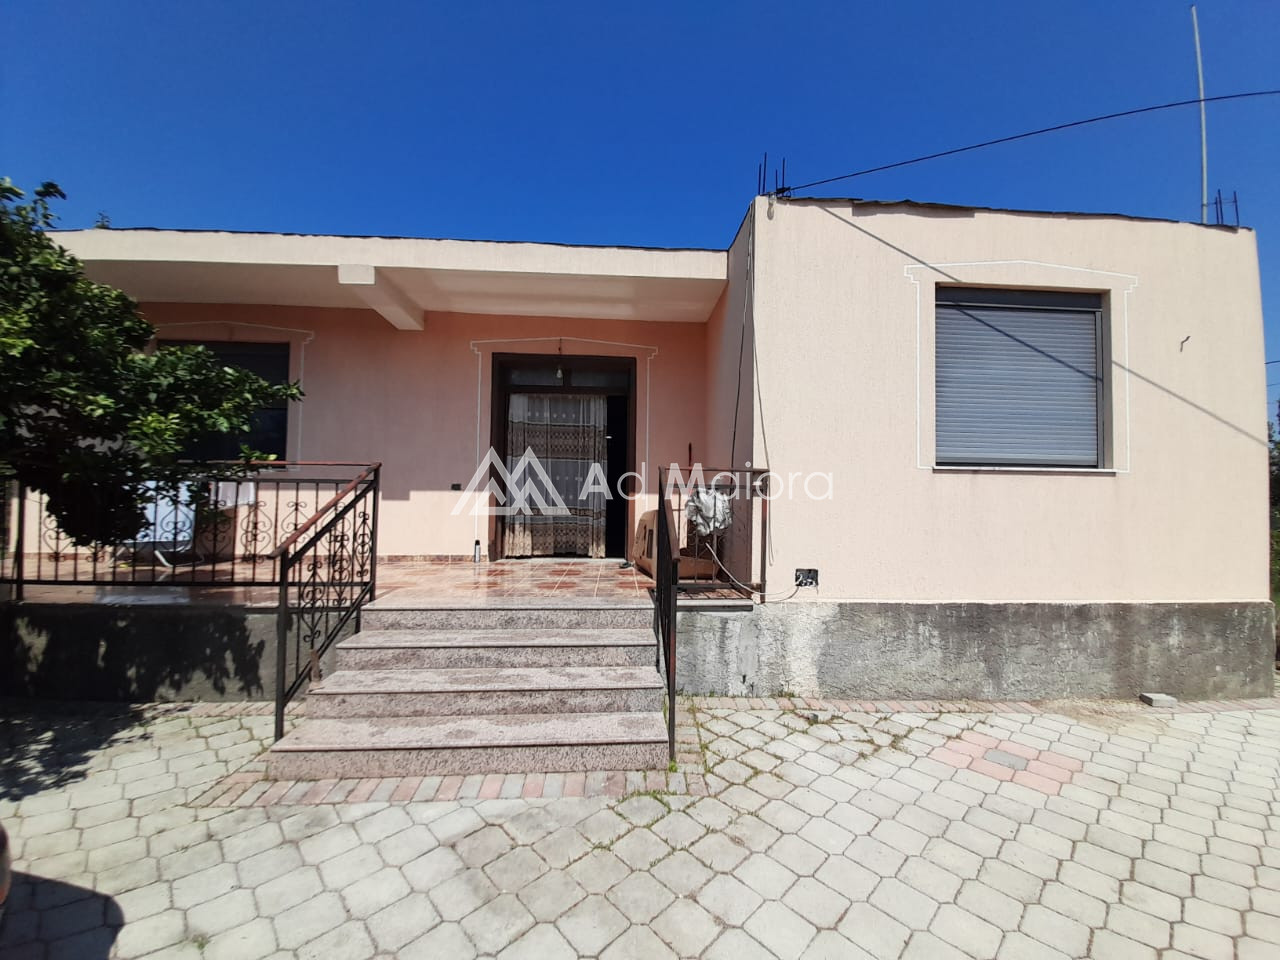 Foto e Shtëpi në shitje spitalle durres, lagjja 15, Durrës